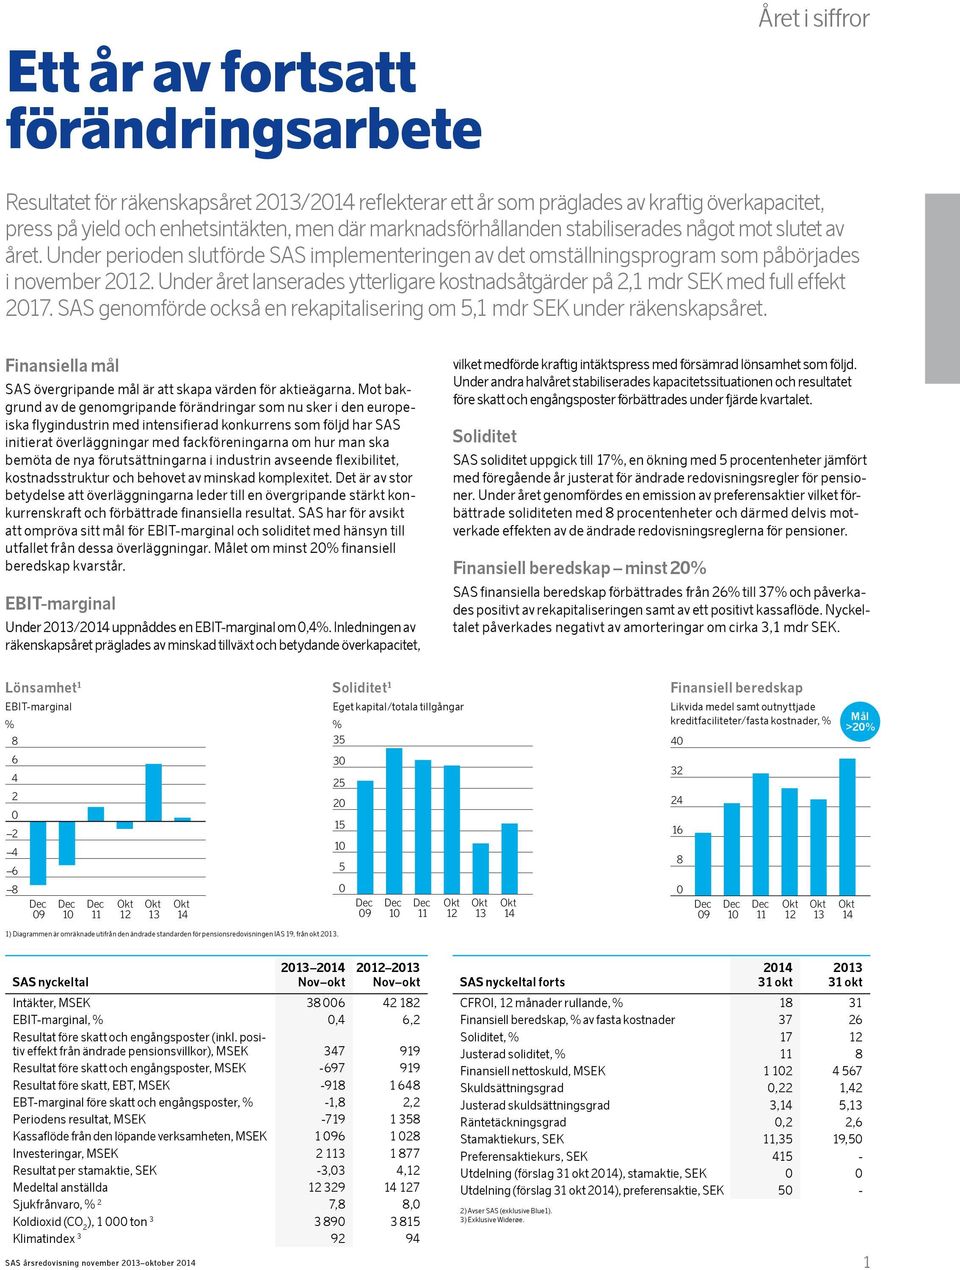 Under året lanserades ytterligare kostnadsåtgärder på 2,1 mdr SEK med full effekt 2017. SAS genomförde också en rekapitalisering om 5,1 mdr SEK under räkenskapsåret.